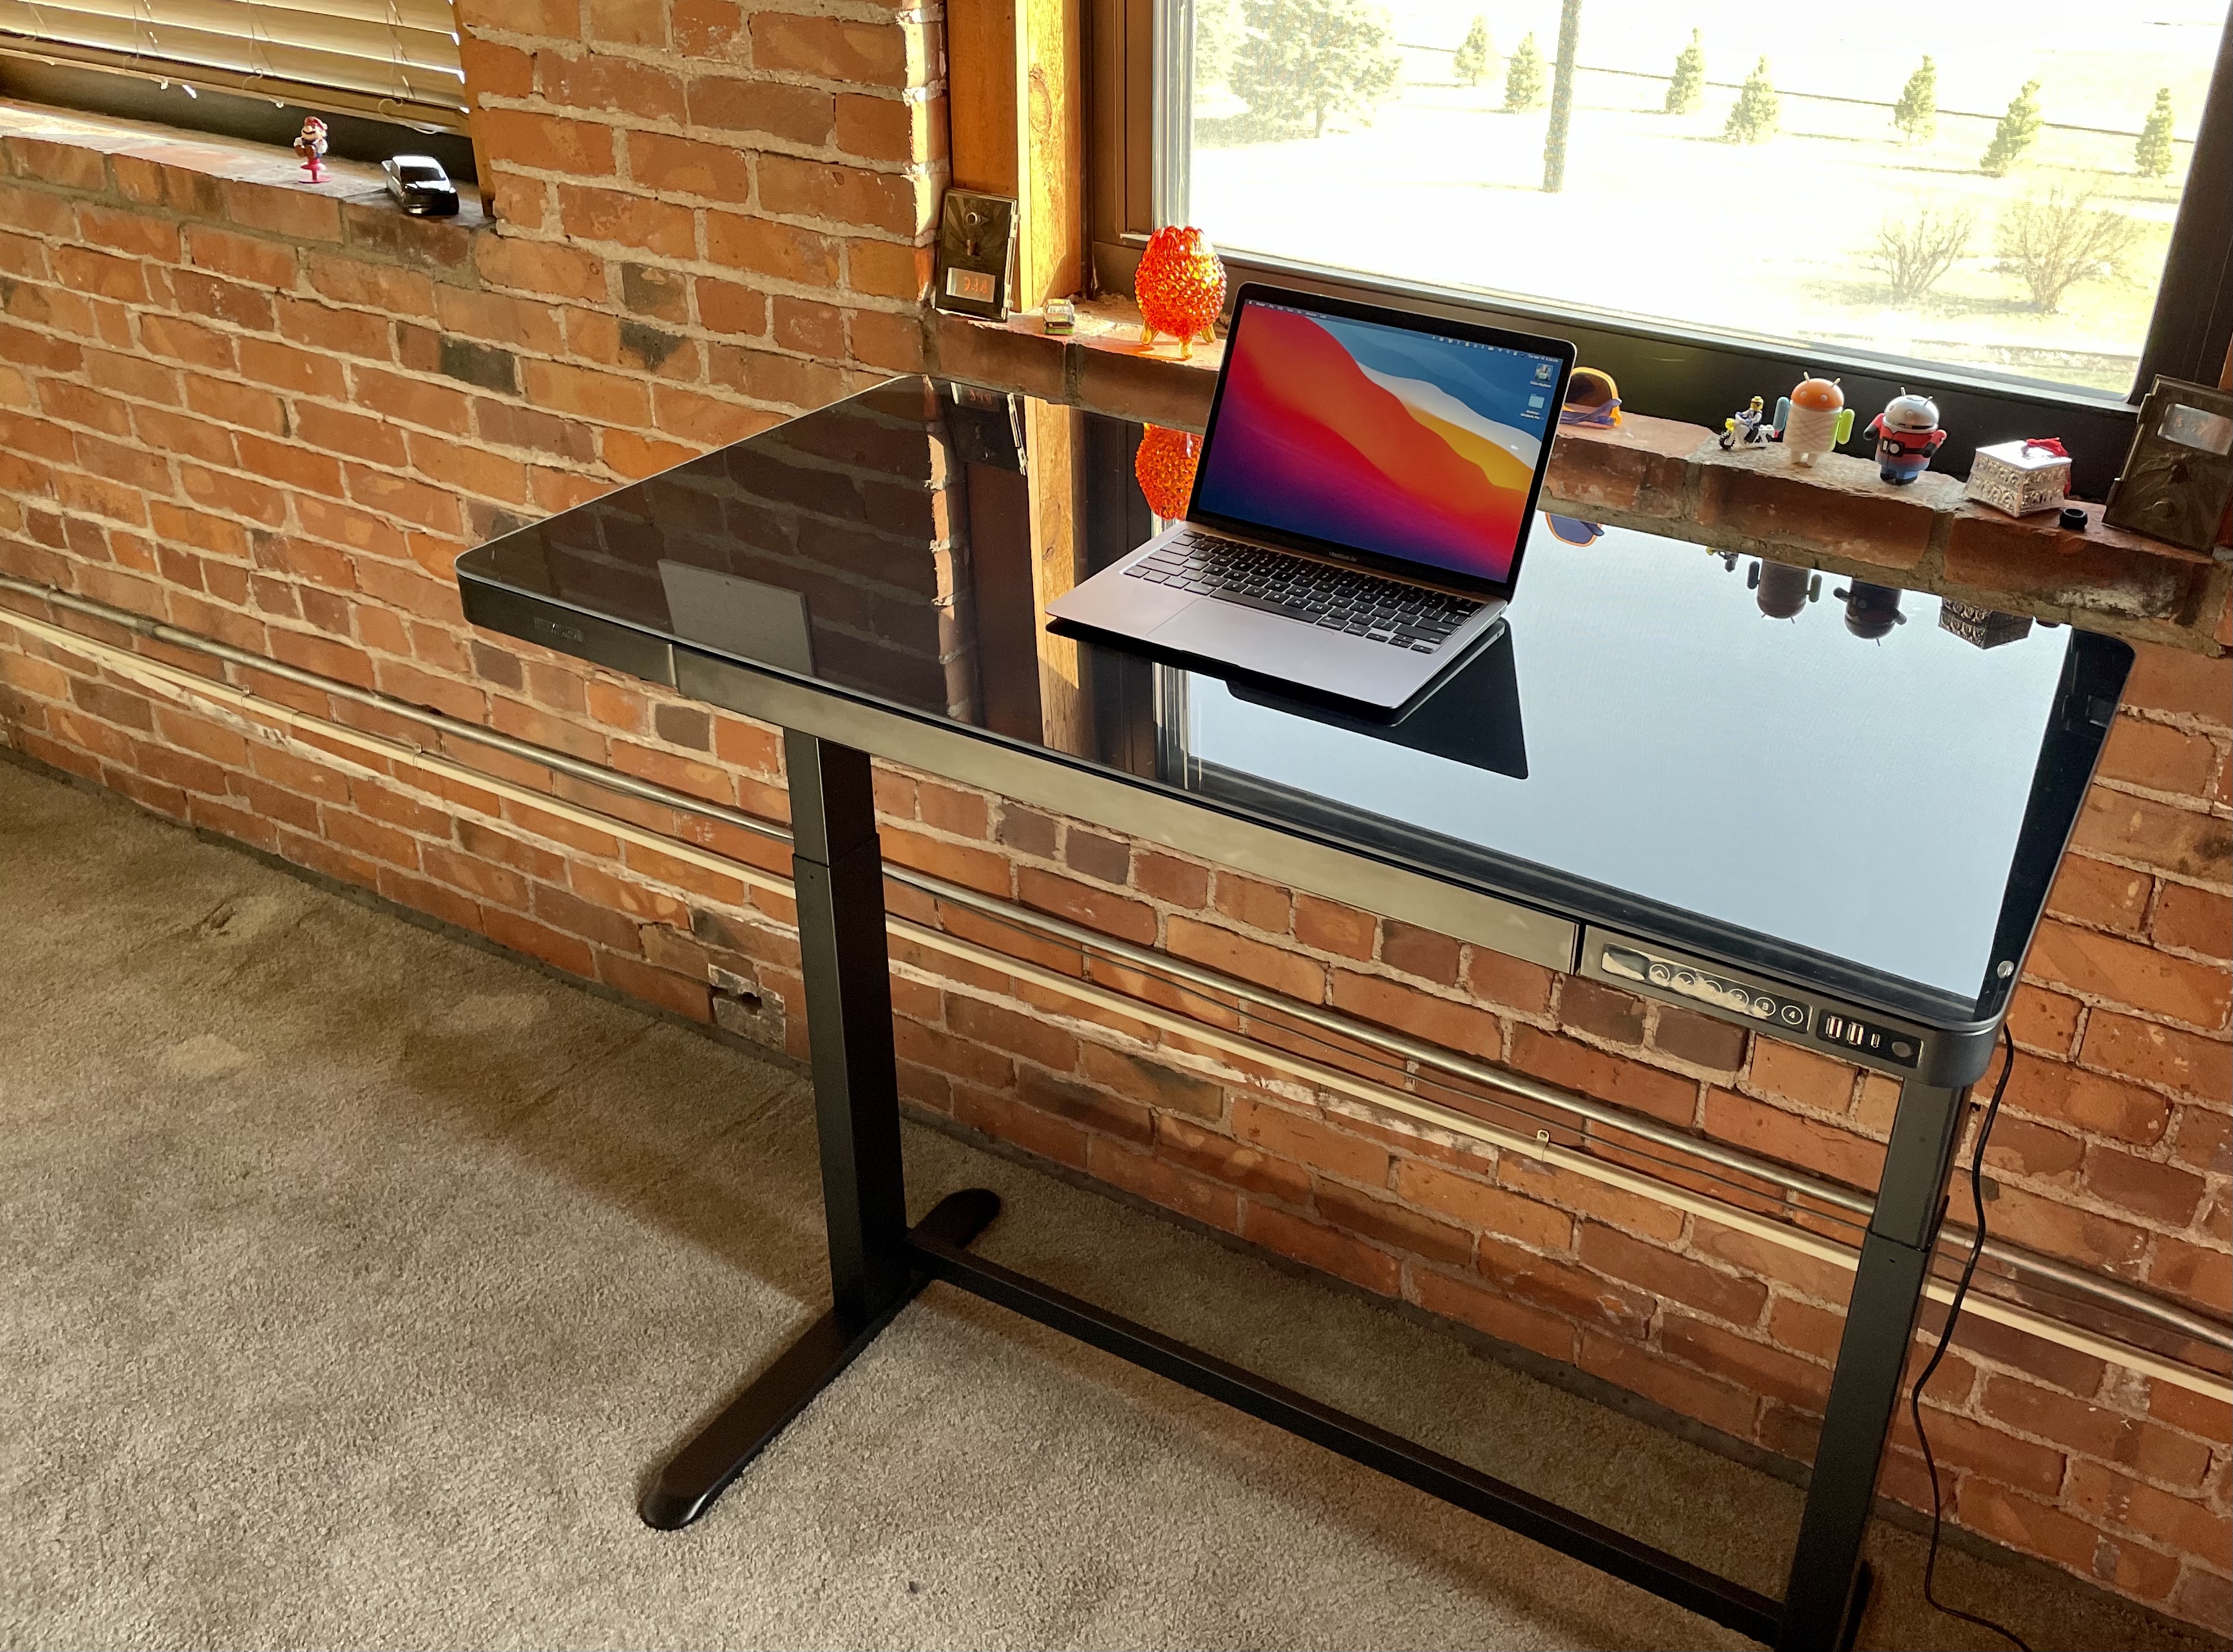 Flexispot Comhar EG8 Review: An Affordable Standing Desk